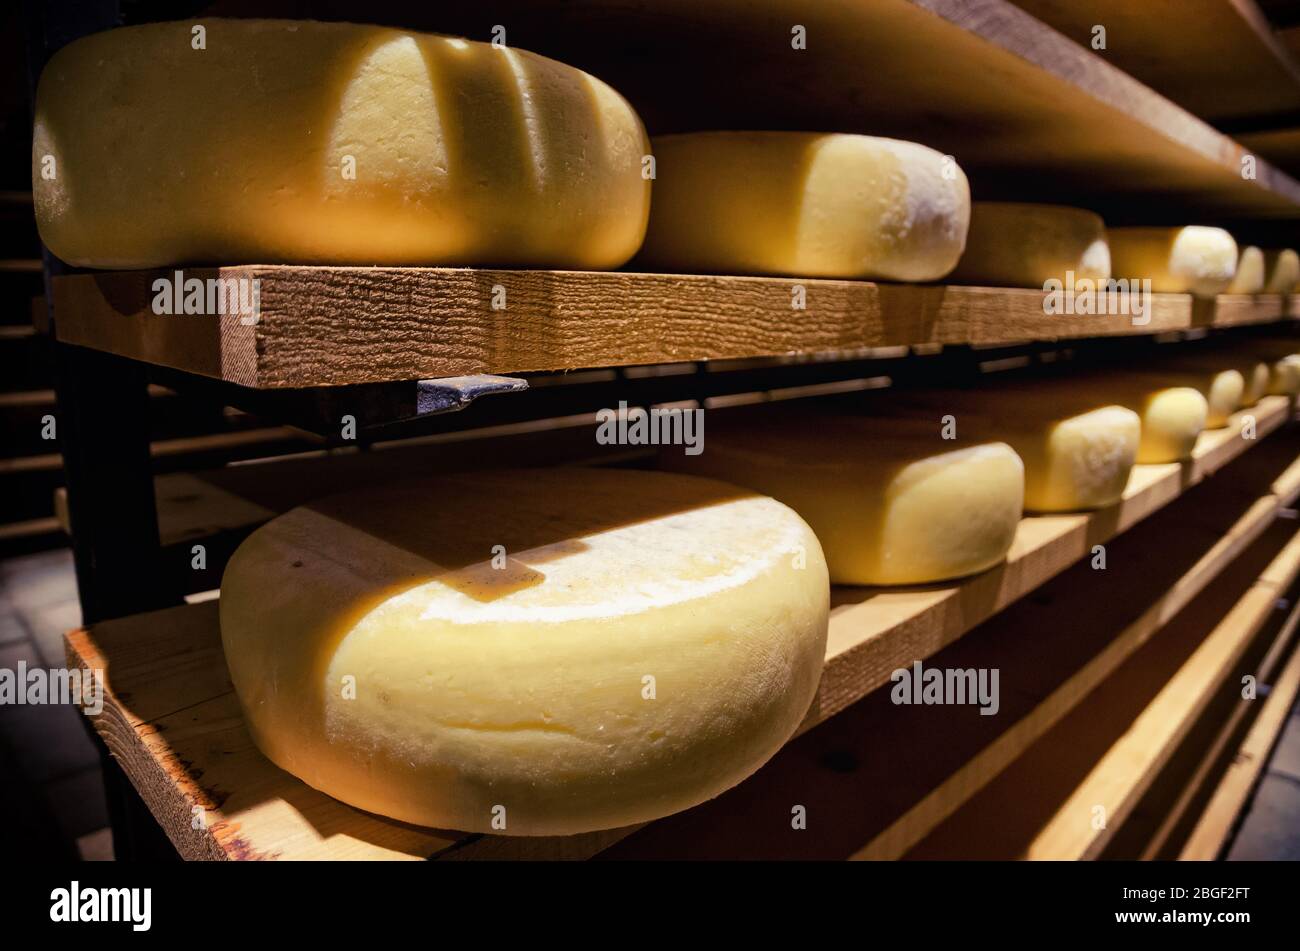 toma italiana (formaggio a pasta dura) condita in una cantina fredda e scura Foto Stock